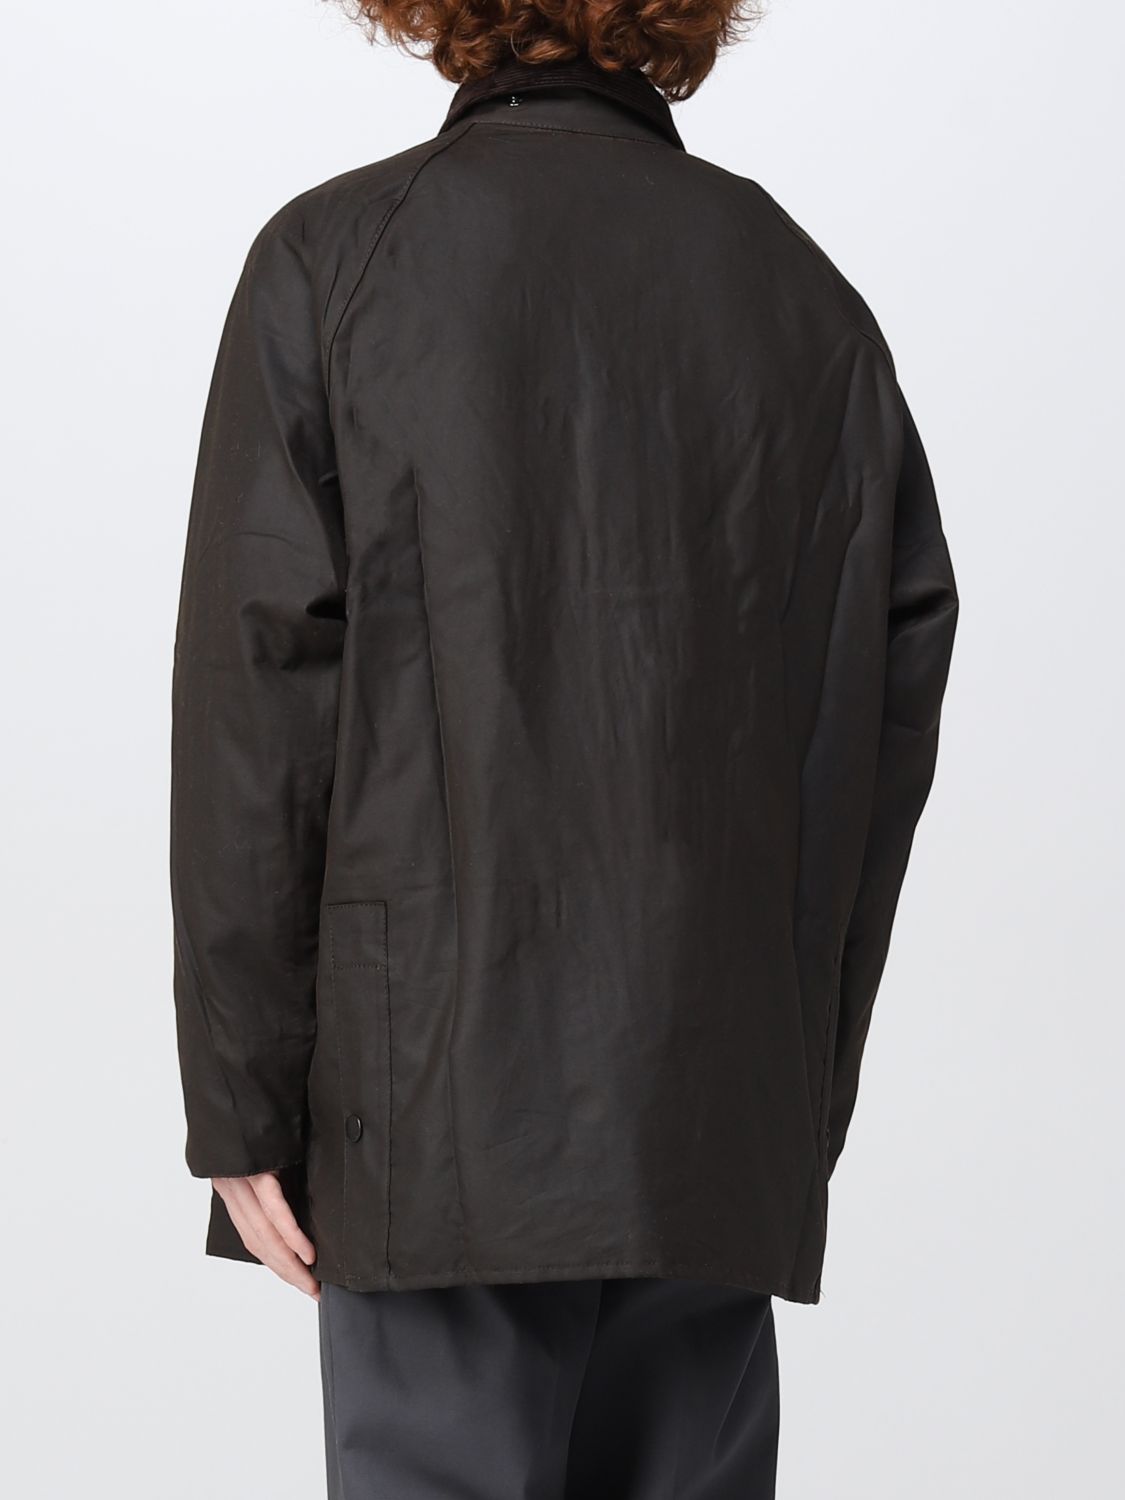 ik heb het gevonden Goodwill constante BARBOUR: jacket for man - Olive | Barbour jacket MWX0010 online on  GIGLIO.COM